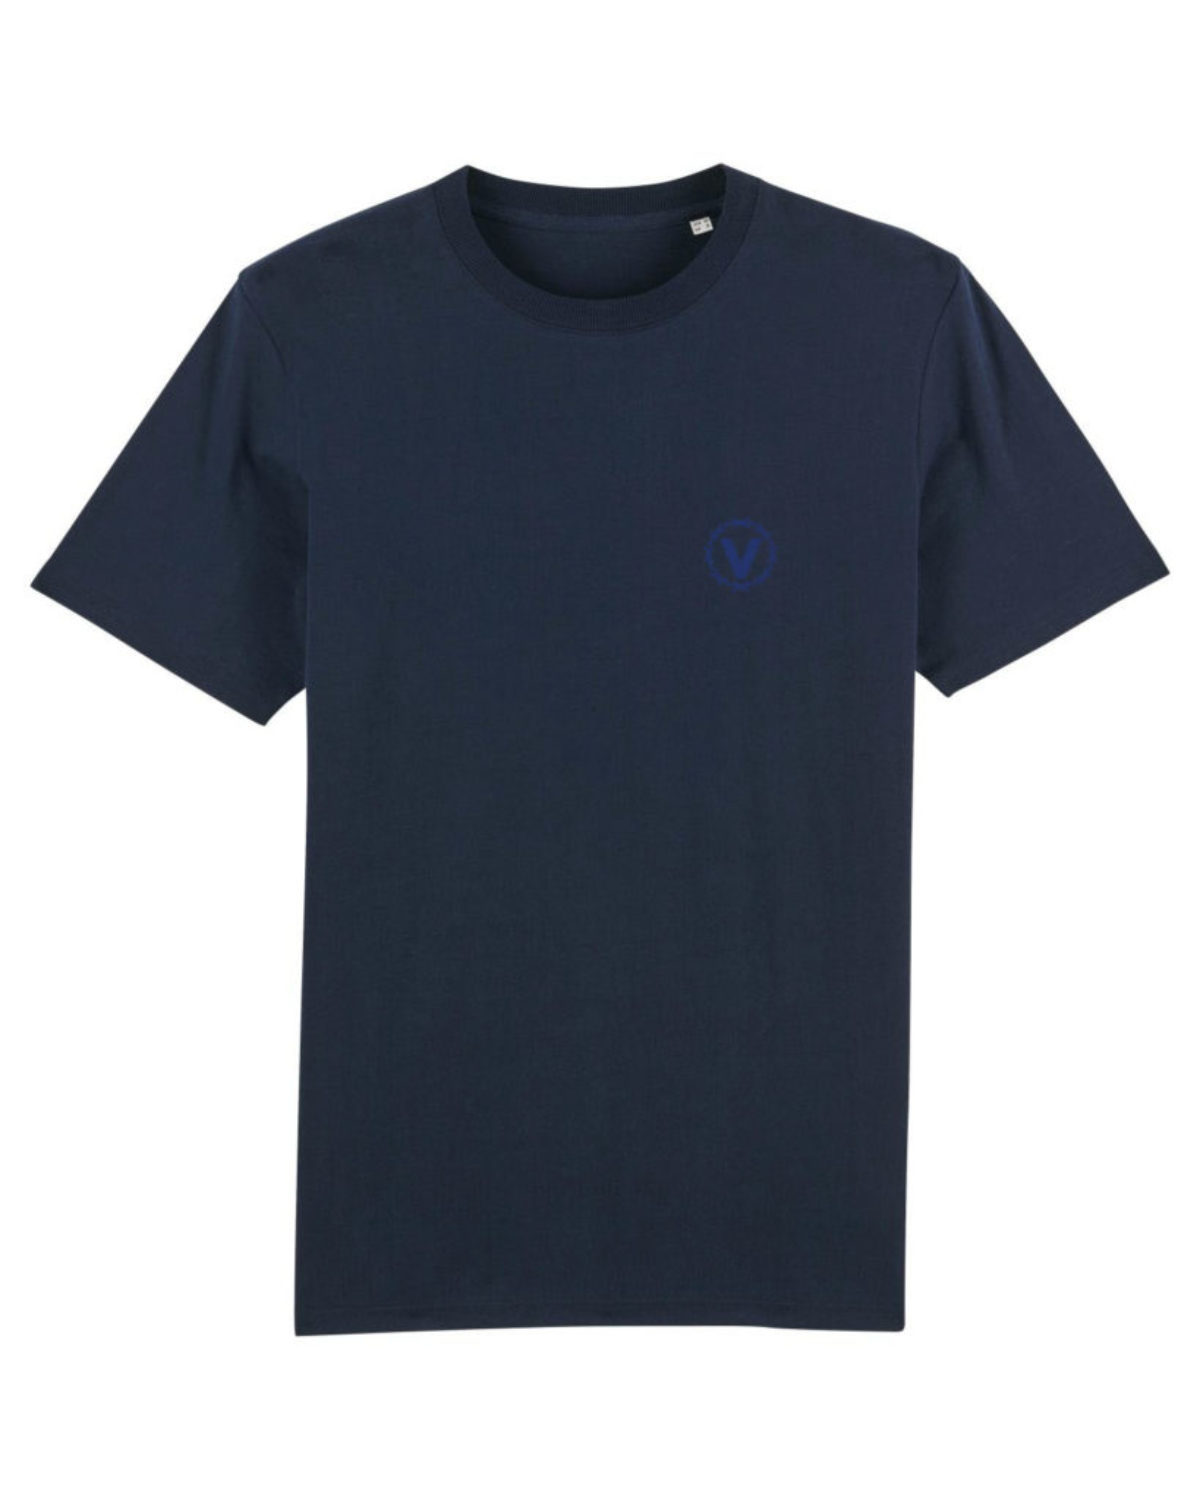 T-shirt - V.